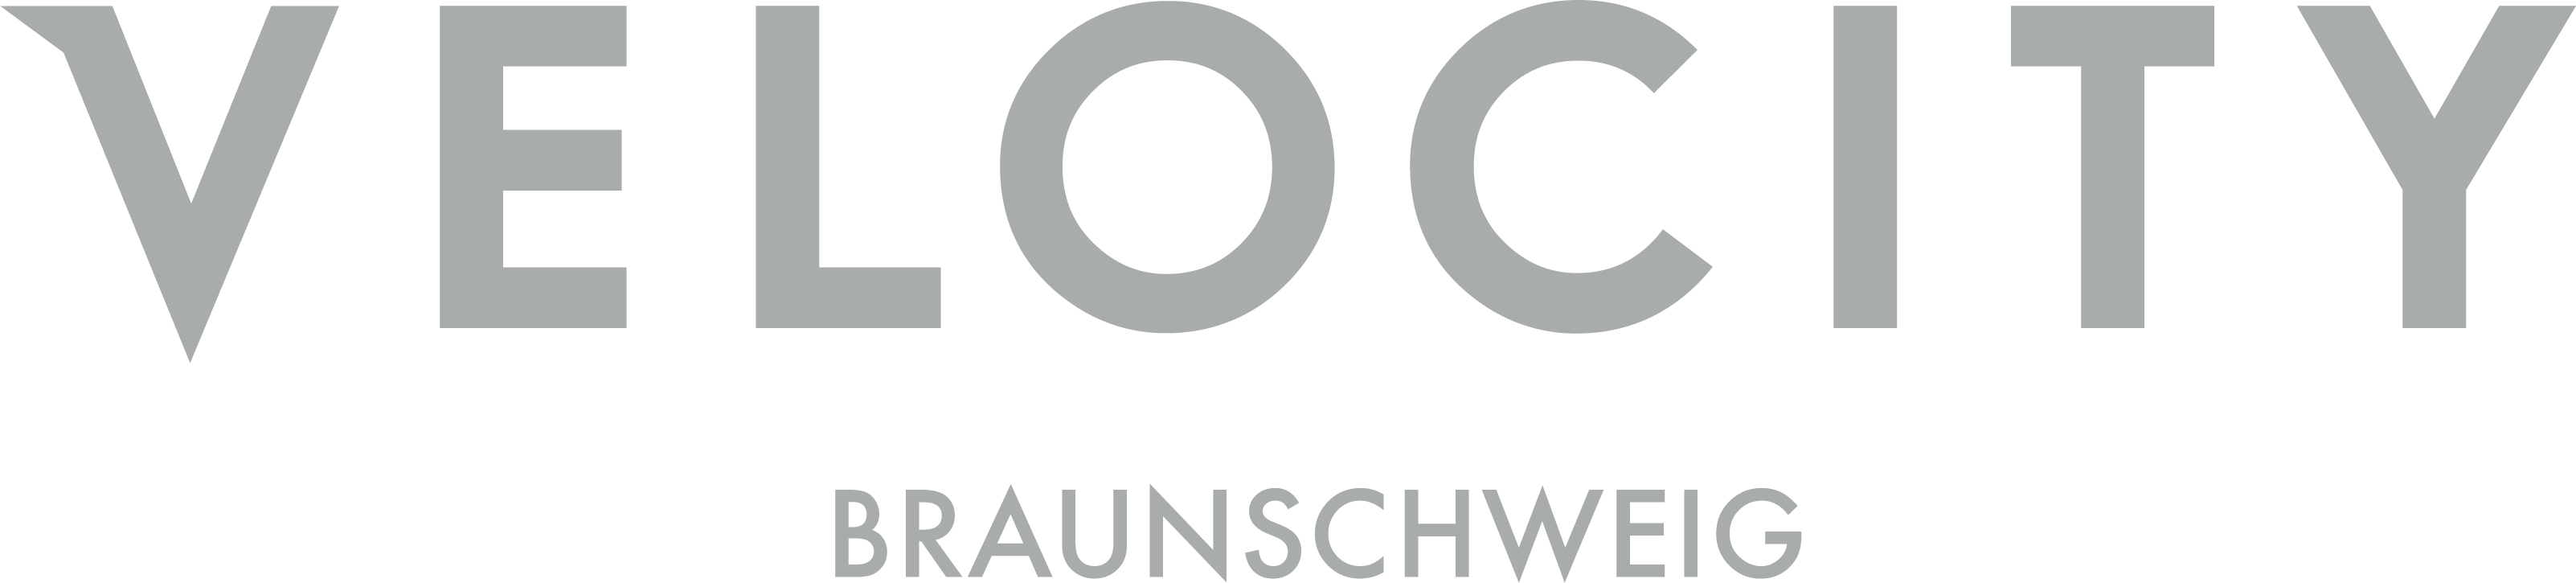 velocity Braunnschweig GmbH Logo